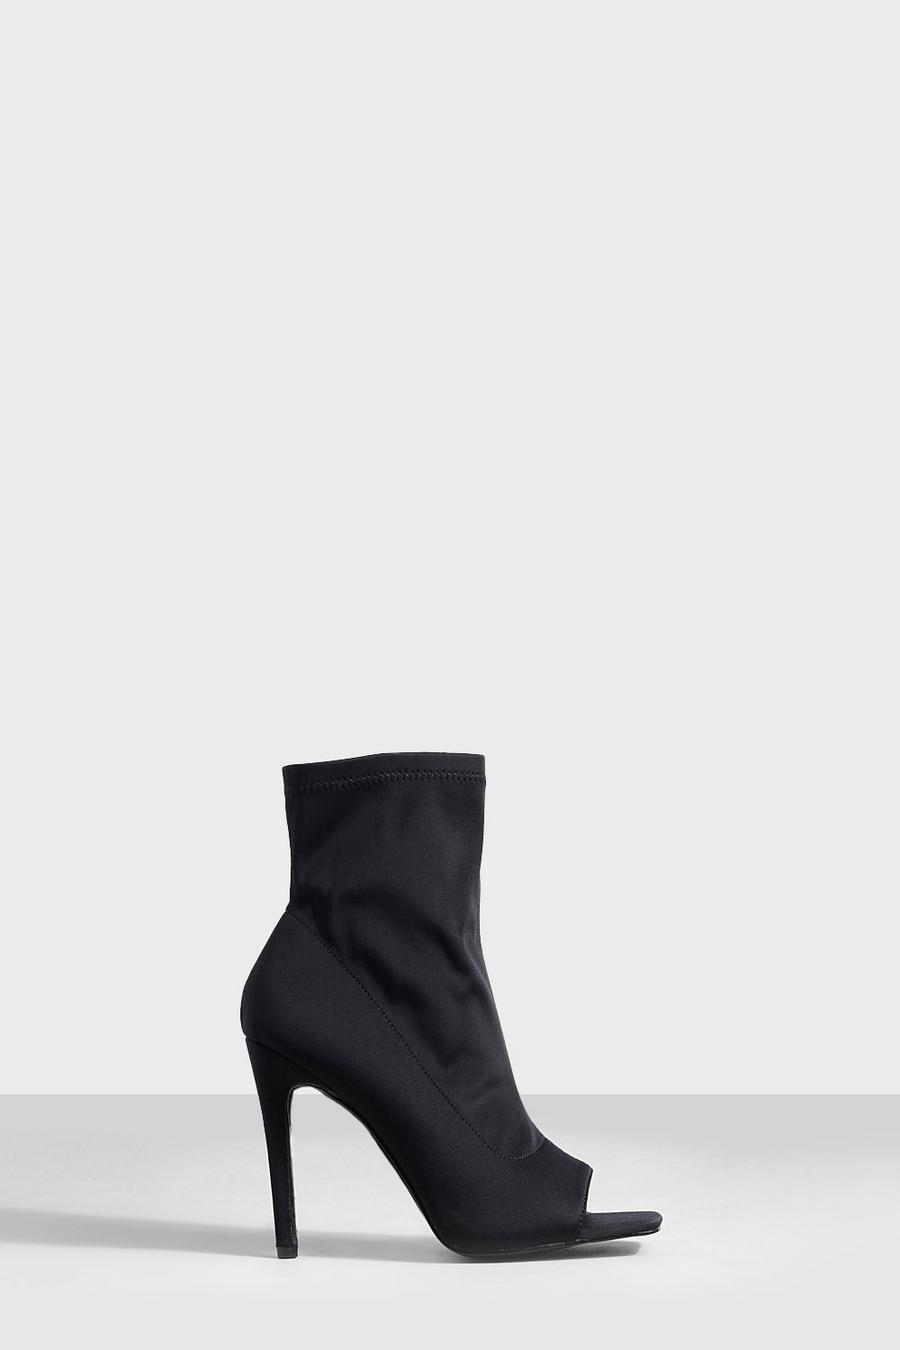 Chaussures à talons style chaussette, Black schwarz